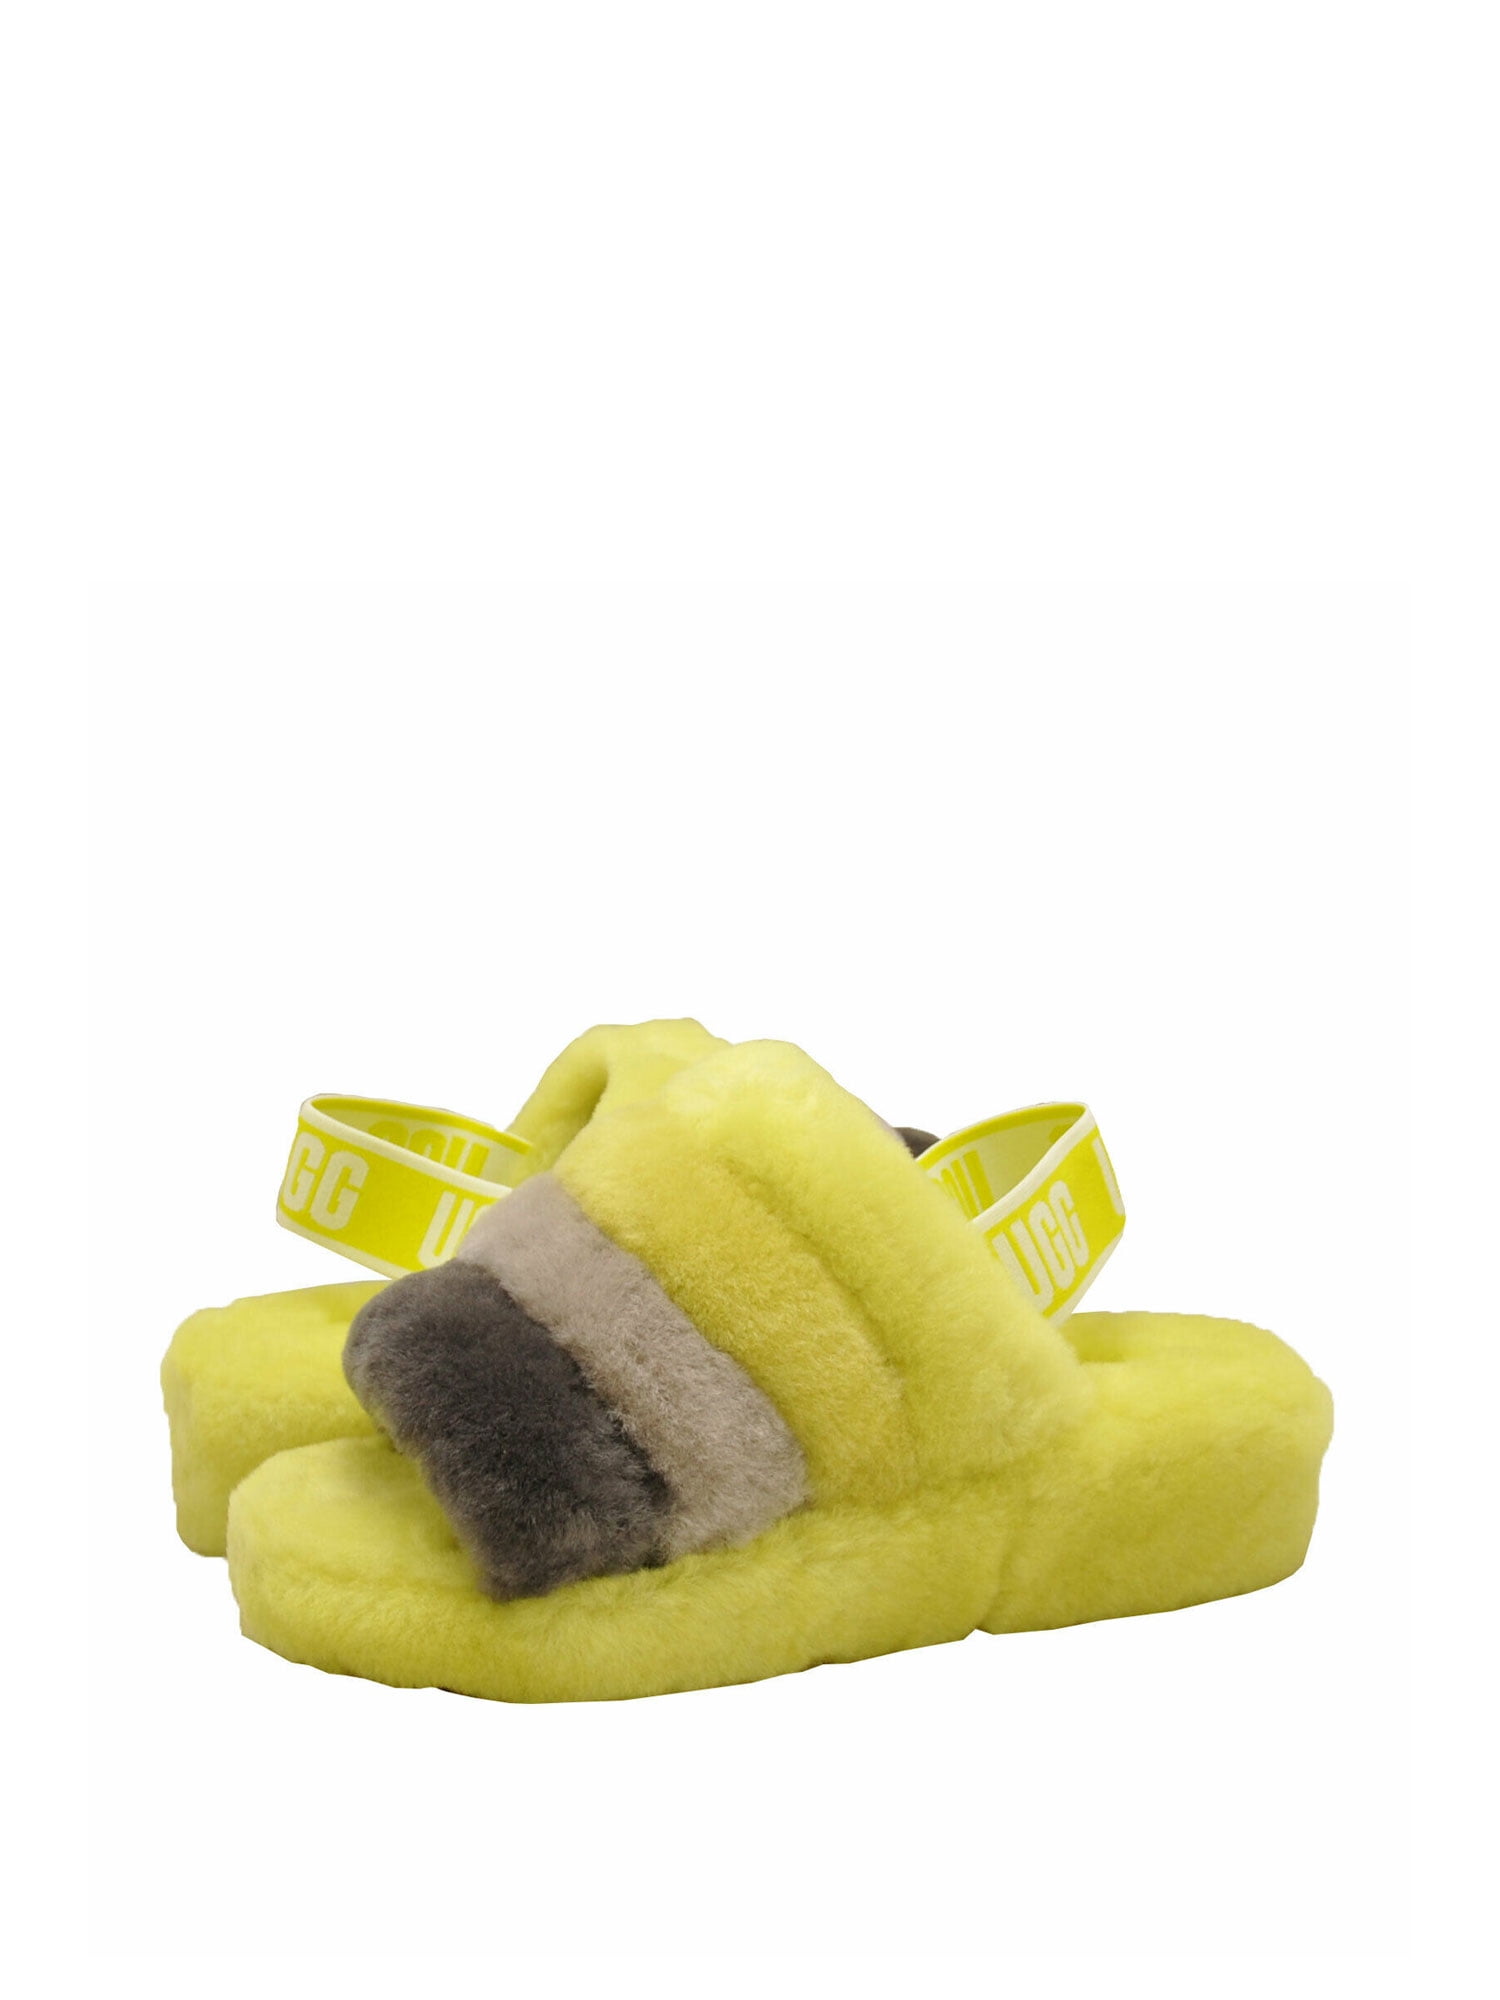 UGG Fluff Yeah Slide Women's Sheepskin Slipper Sandals 1097169 - Walmart.com